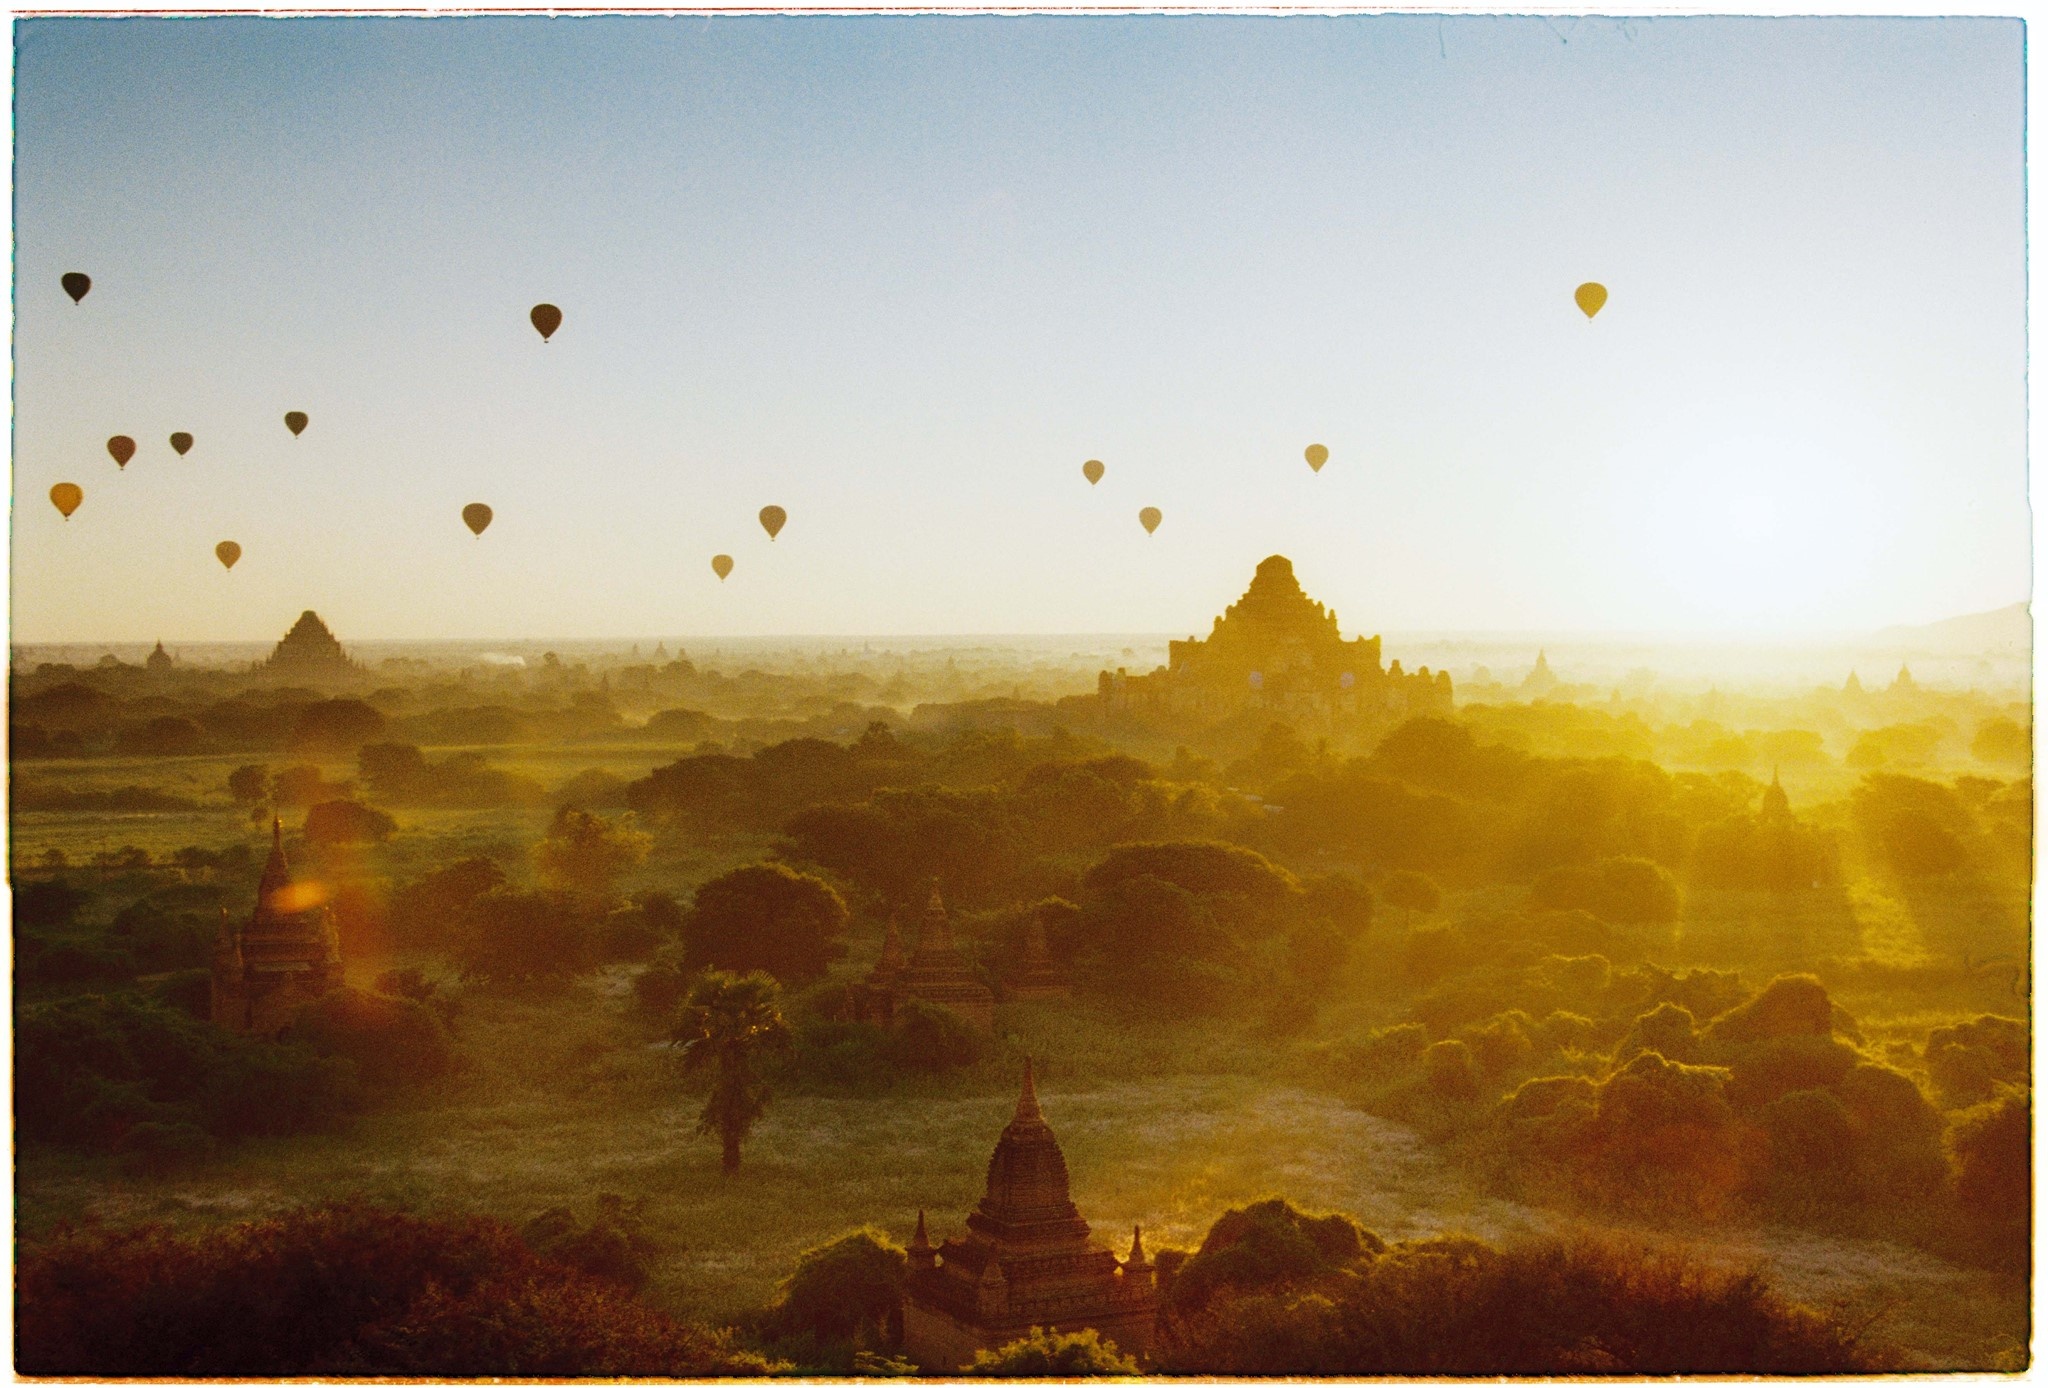 Kinh nghiem du lich Bagan anh 5